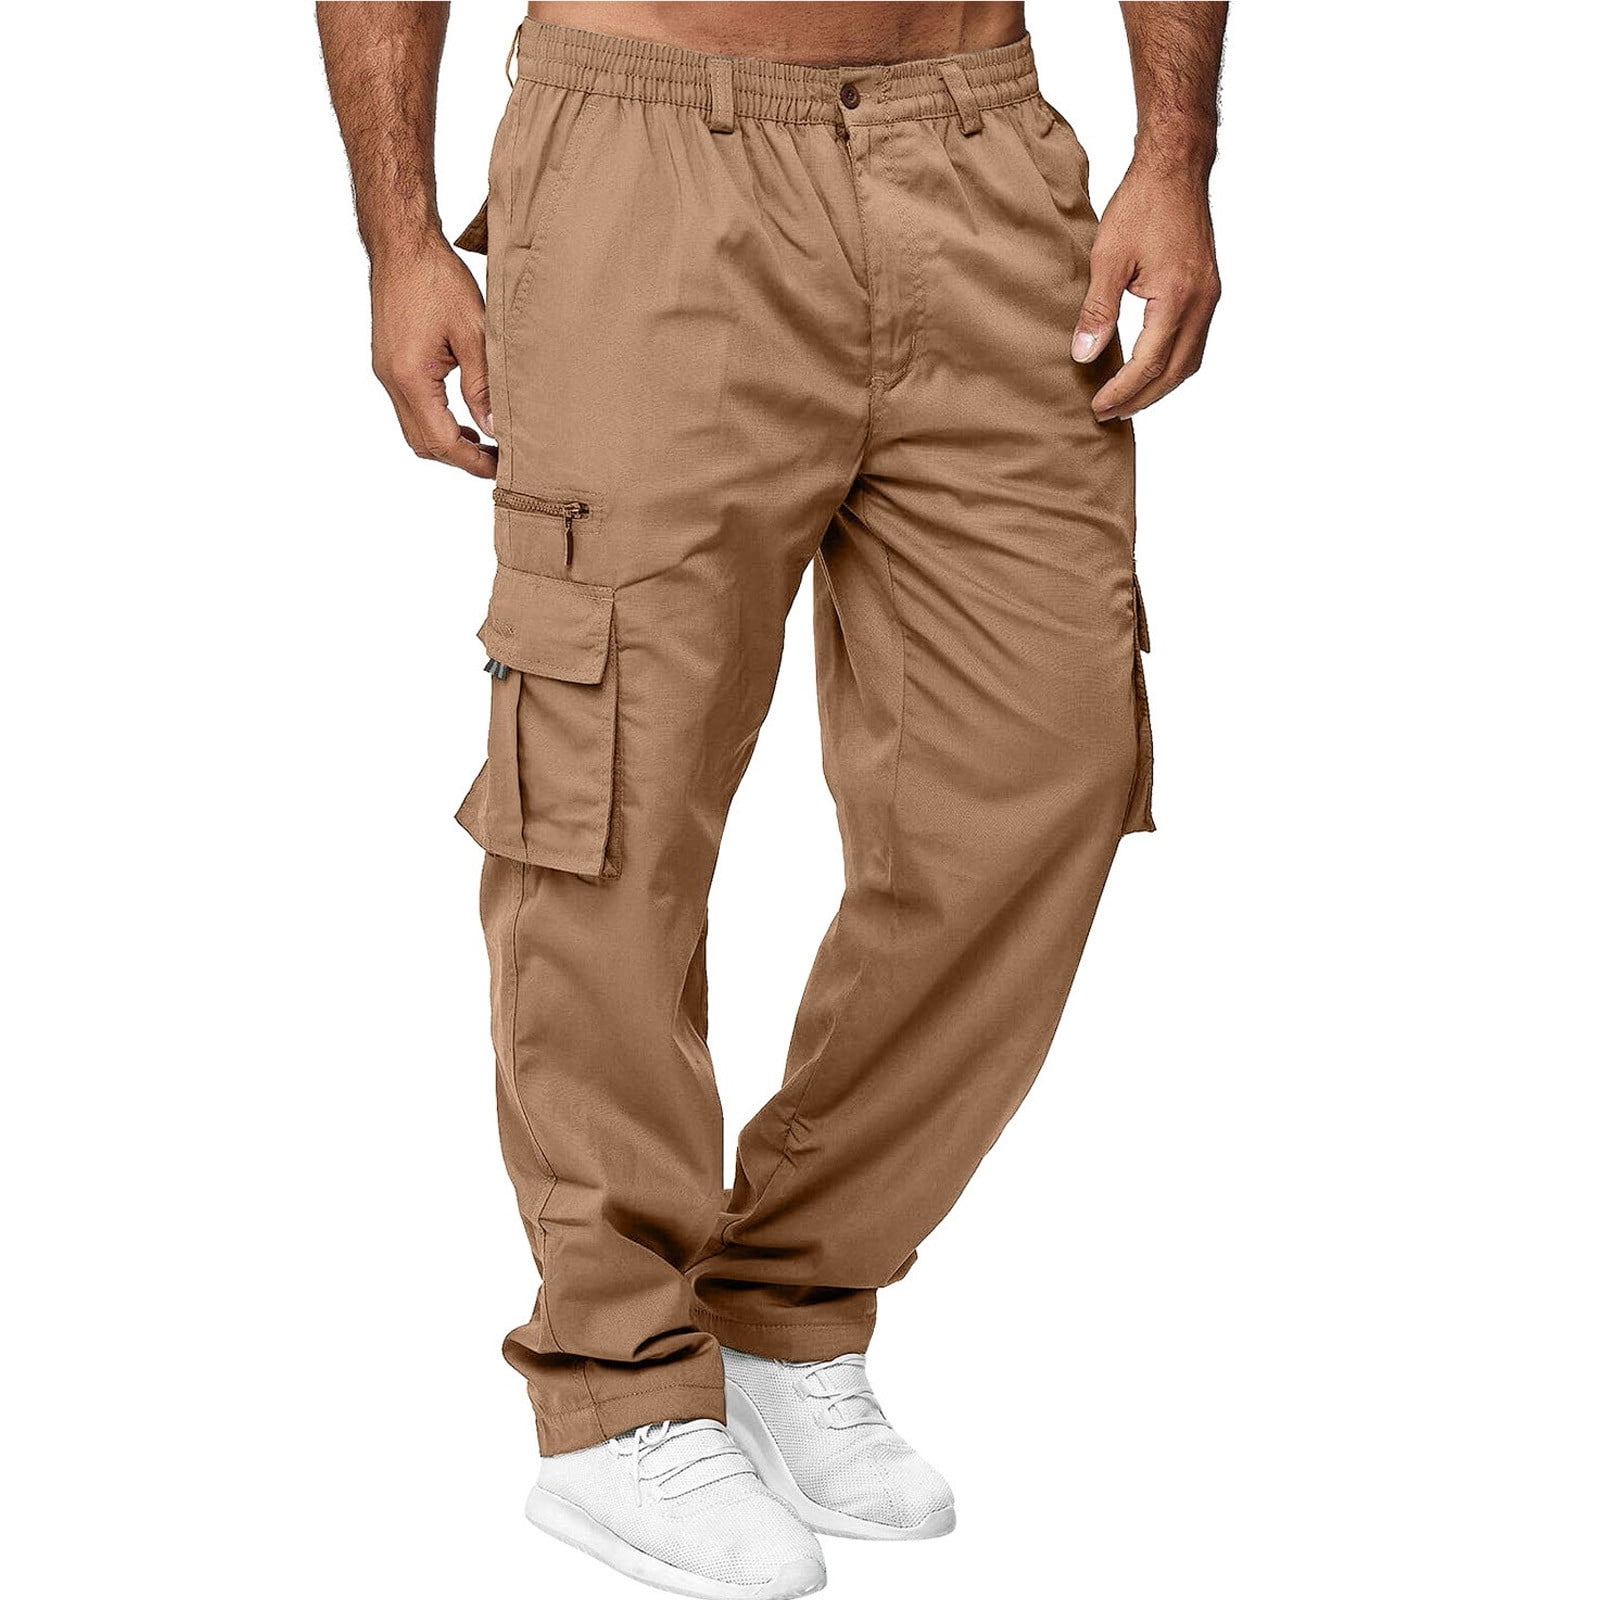 MRULIC jeans for men Overalls Men's Multi-pocket Pants Pants Straight ...